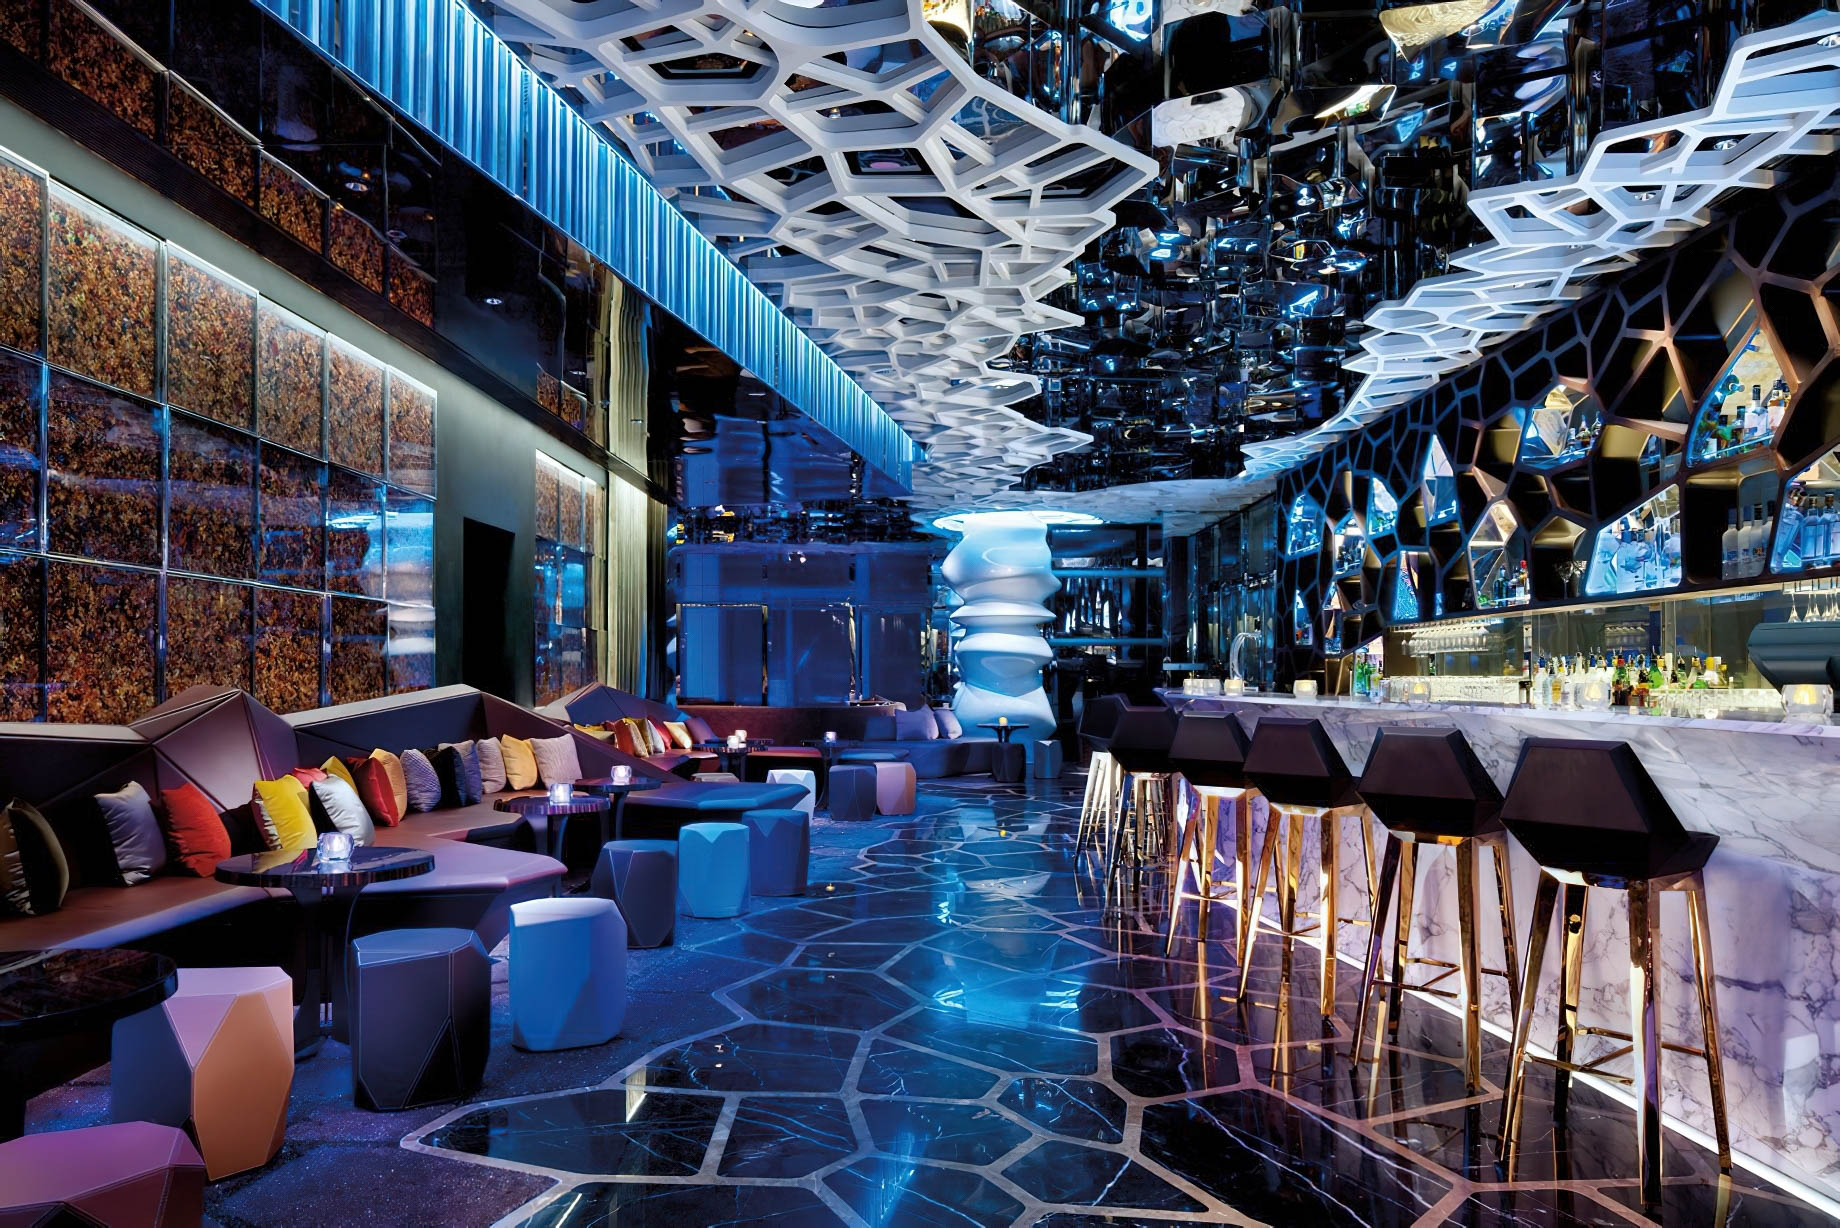 The Ritz-Carlton, Hong Kong Hotel - West Kowloon, Hong Kong - Ozone Bar